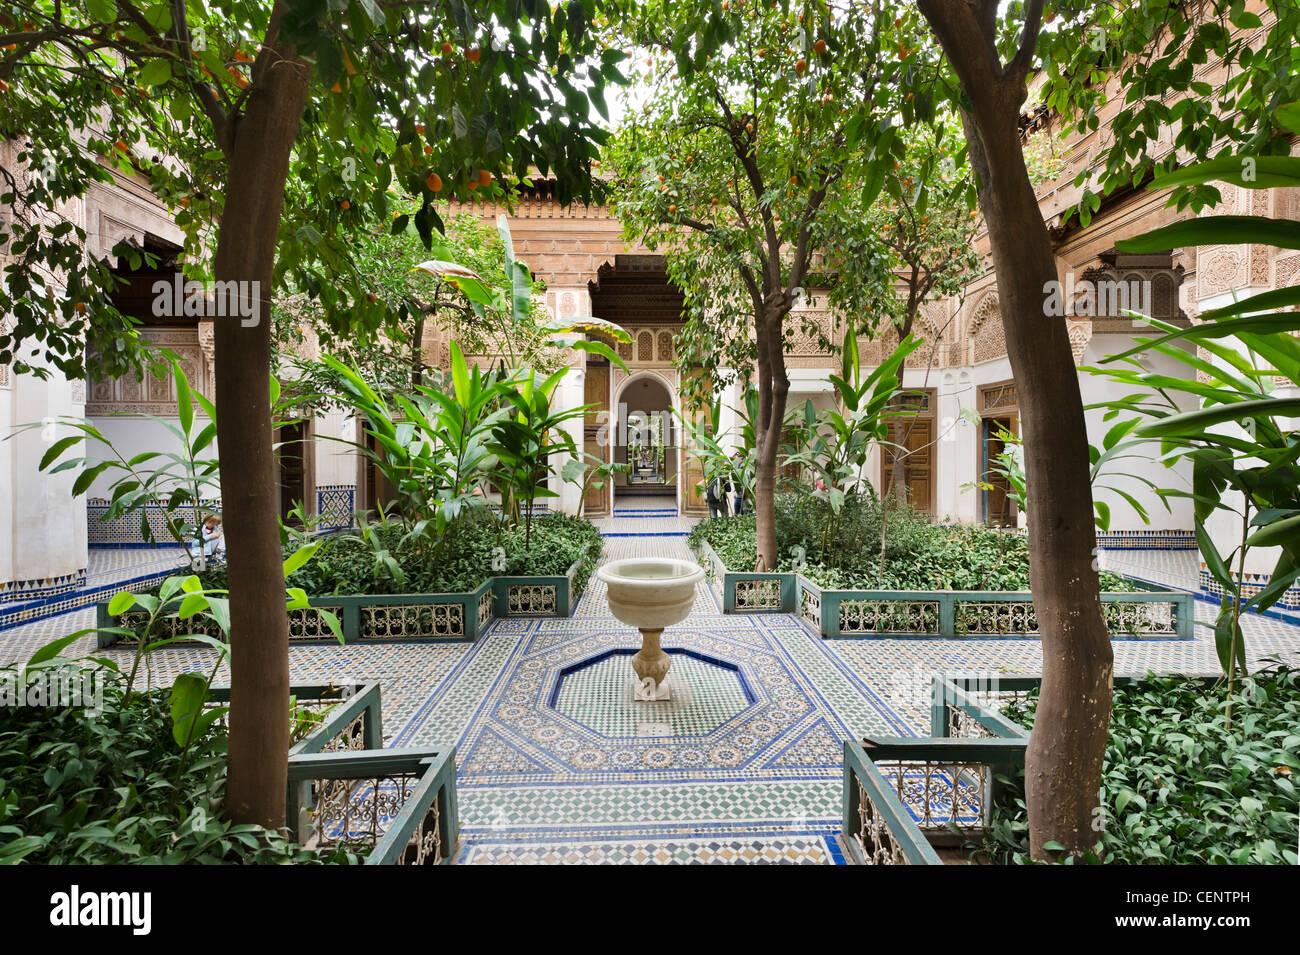 Dans la cour intérieure du palais Bahia, Marrakech, Maroc, Afrique du Nord Banque D'Images